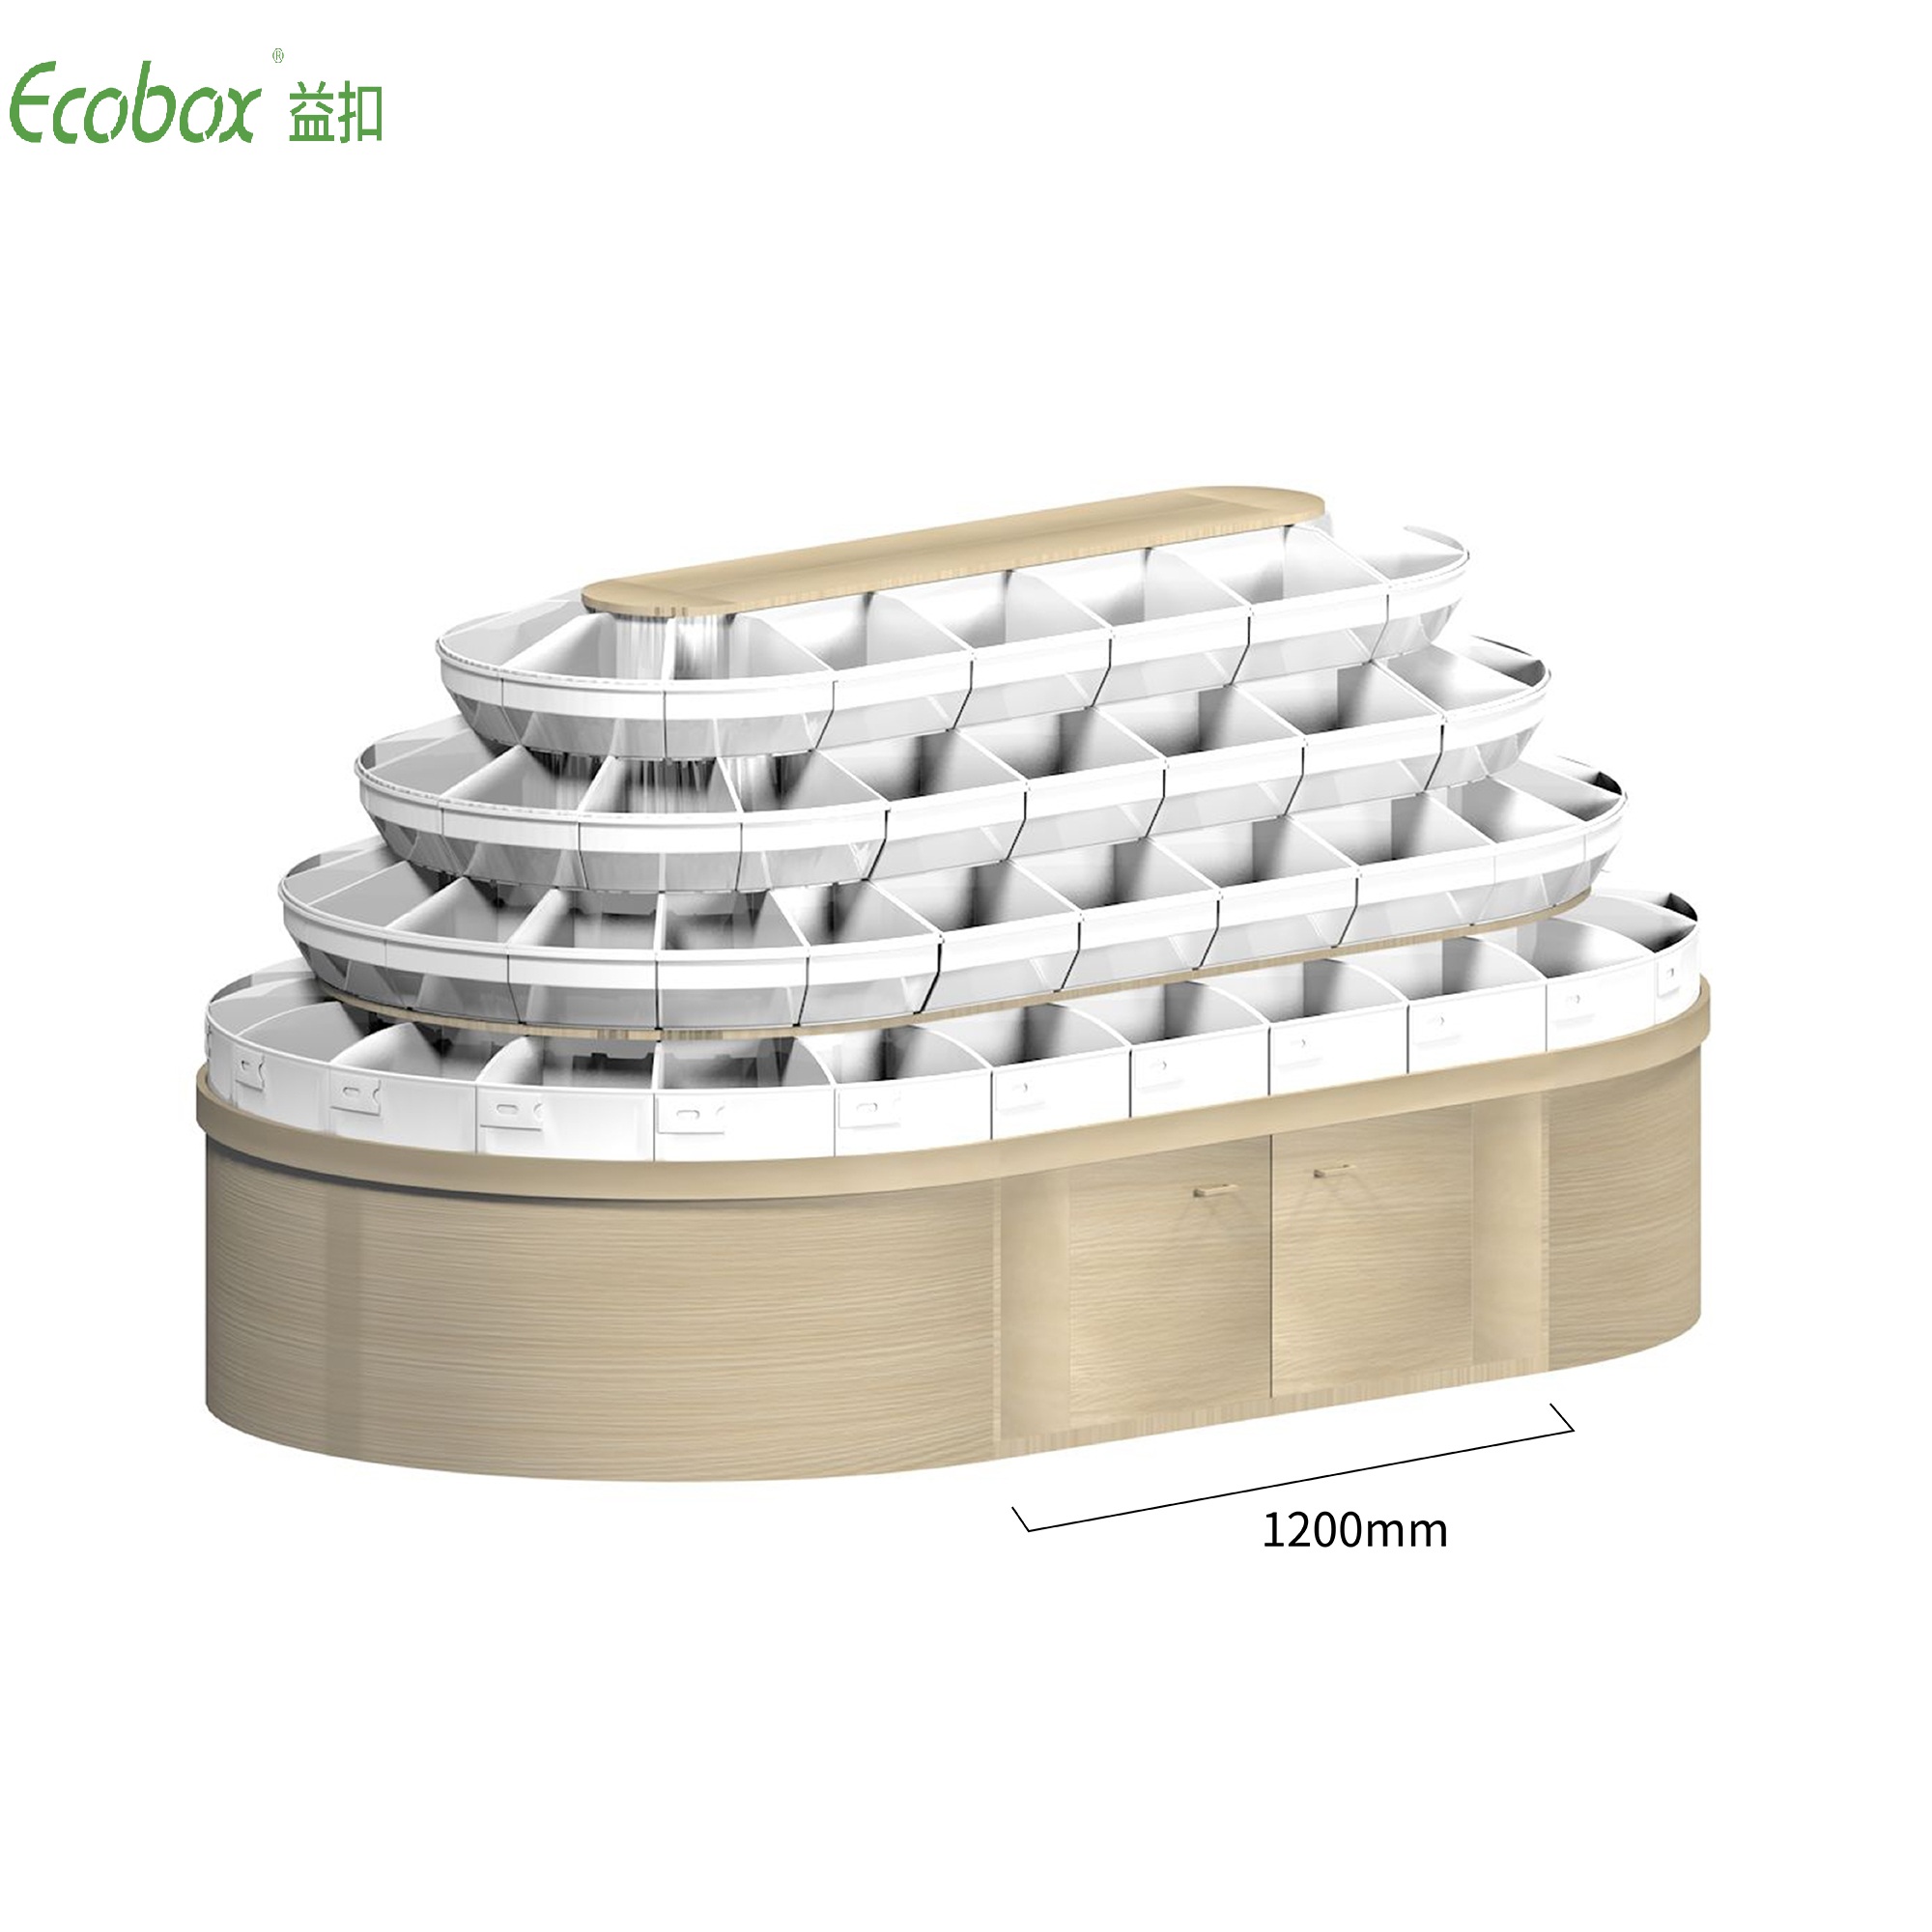 Rundes Regal der Ecobox G008-Serie mit Ecobox-Großbehältern für Supermarkt-Großlebensmitteldisplays